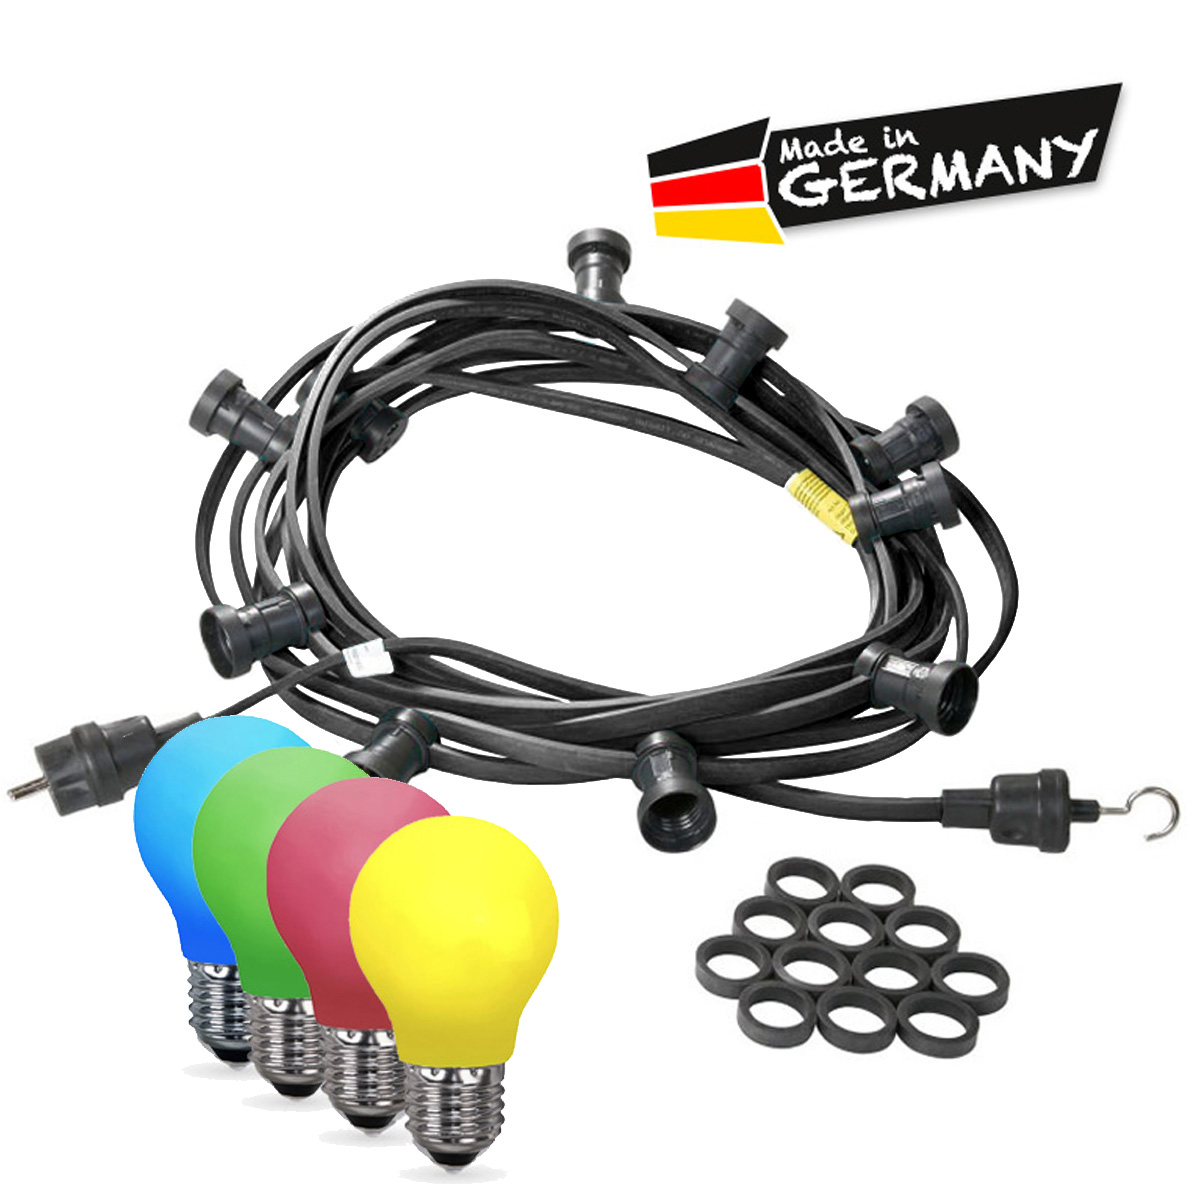 Illu-/Partylichterkette 50m - Außenlichterkette - Made in Germany - 50 x bunte LED Tropfenlampe